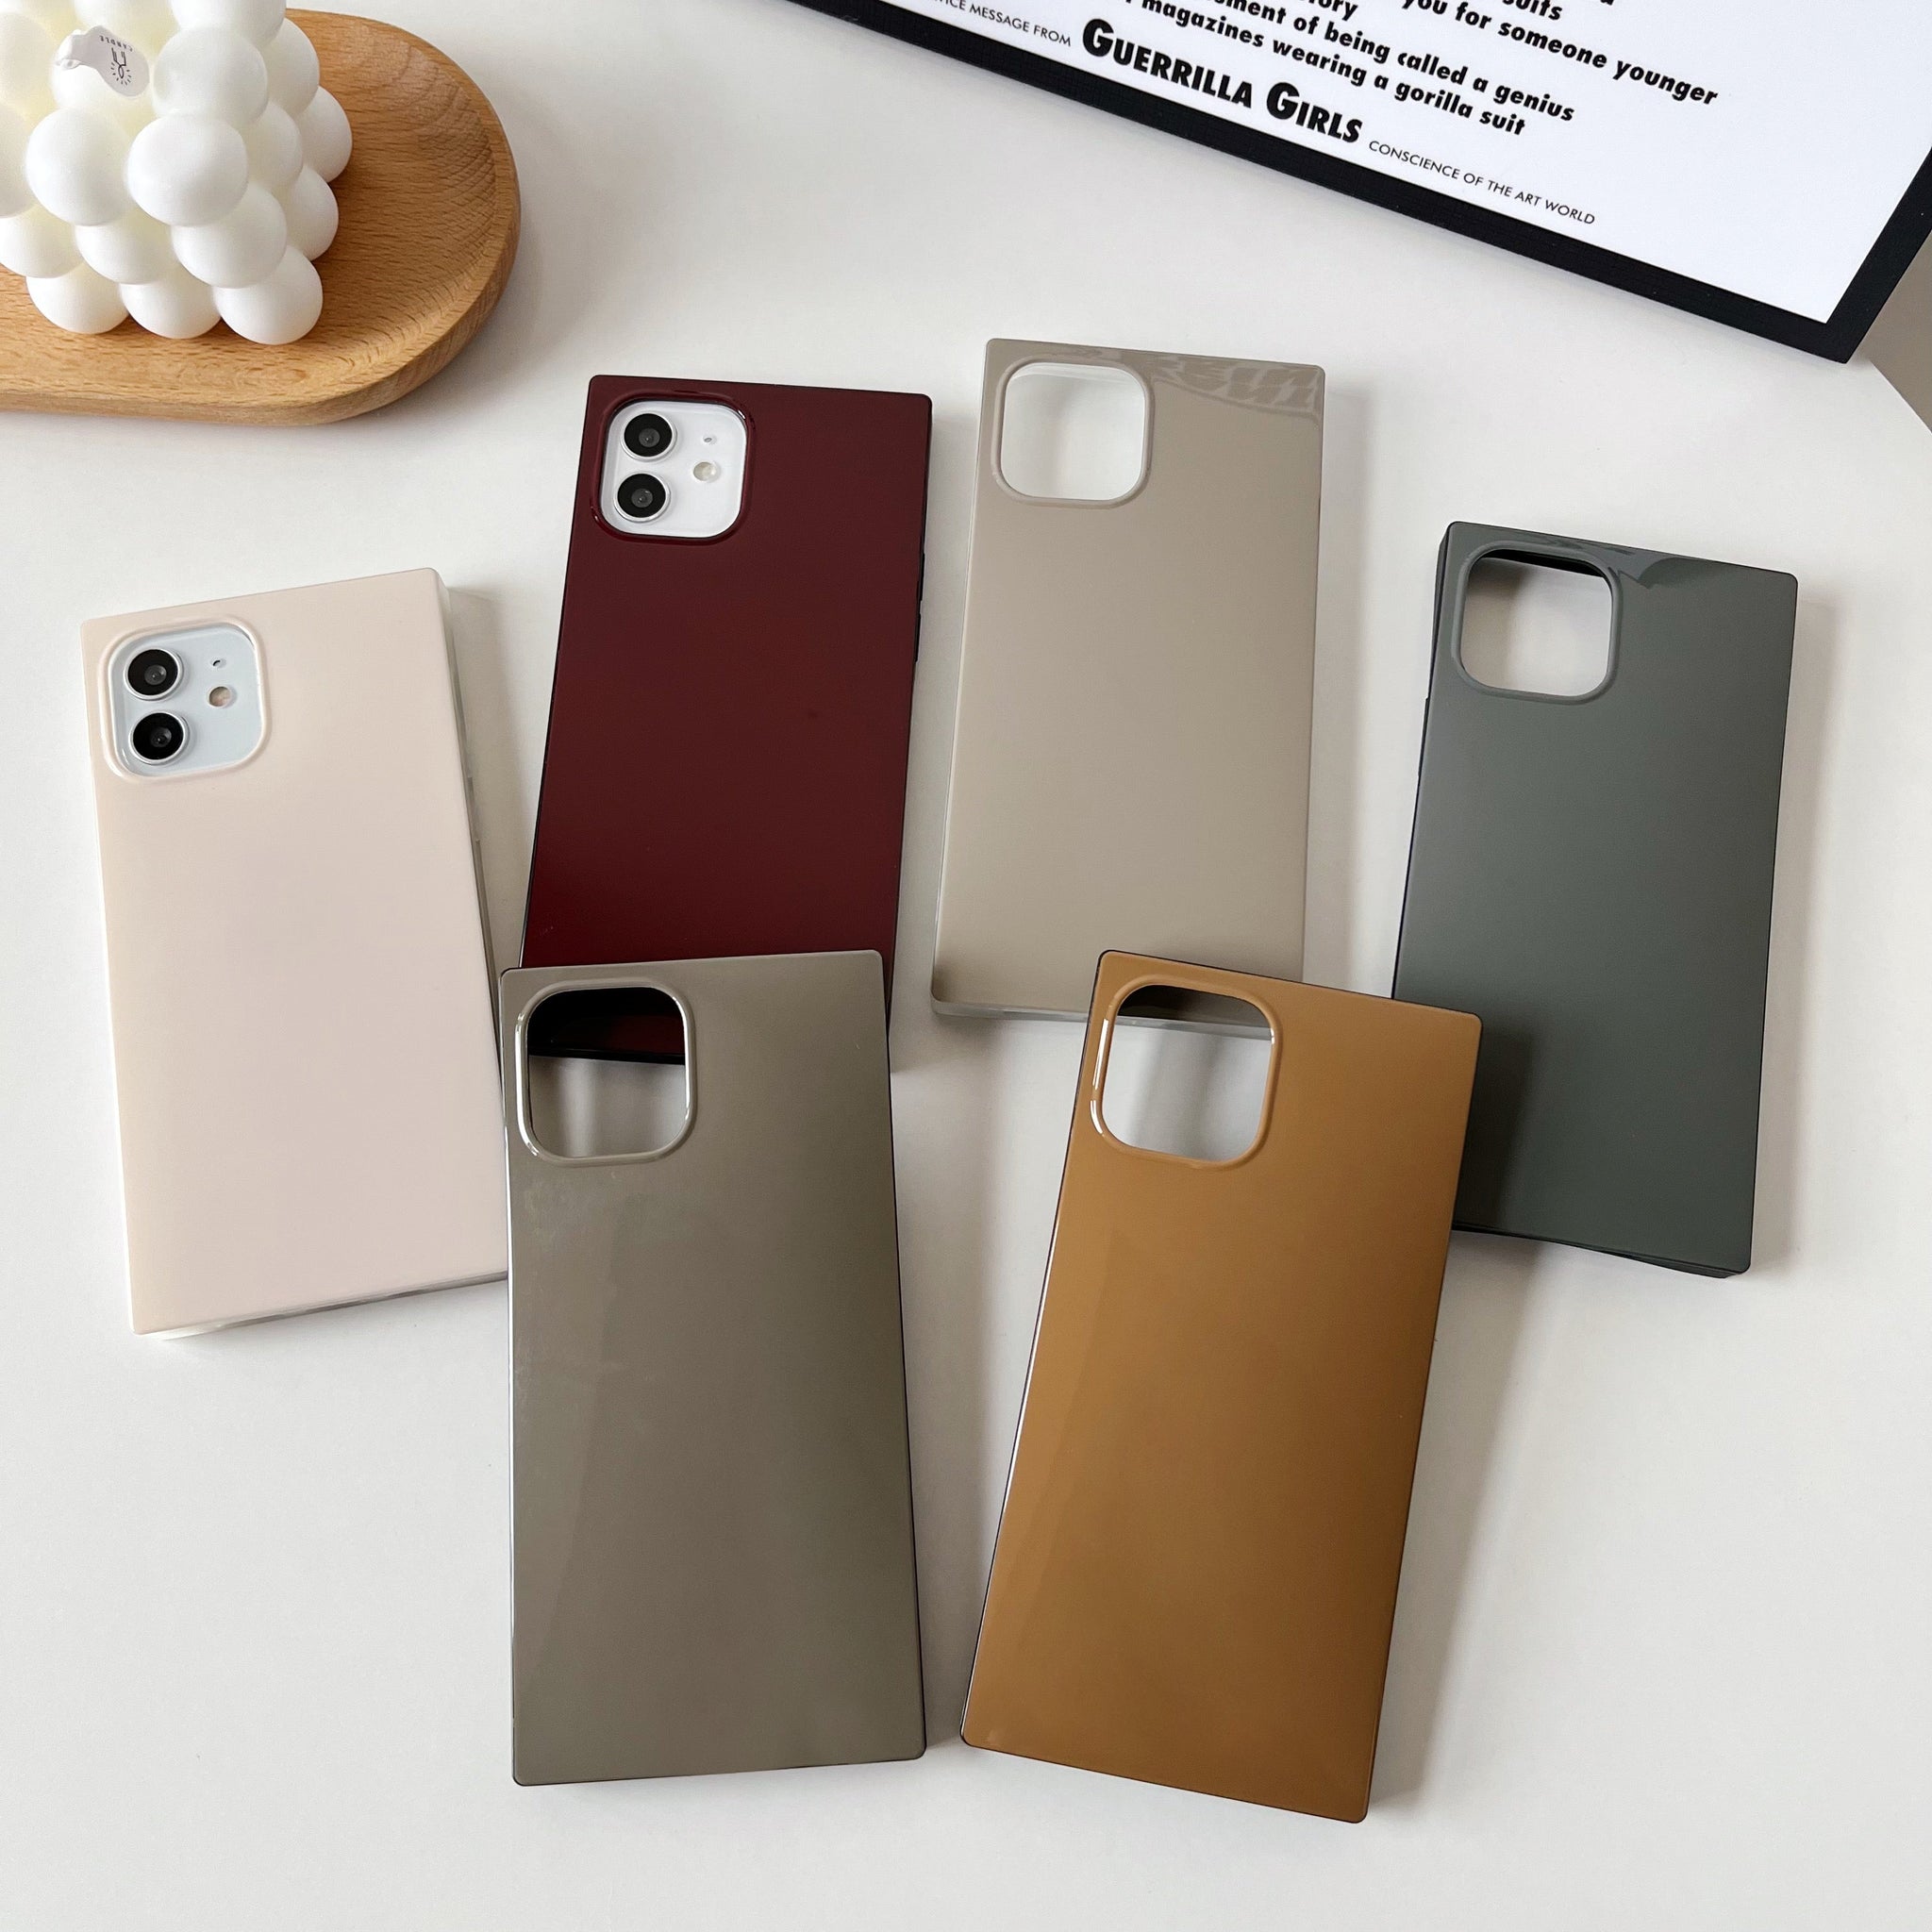 iPhone 13 mini Case Square Neutral Plain Color (Asphalt Gray)